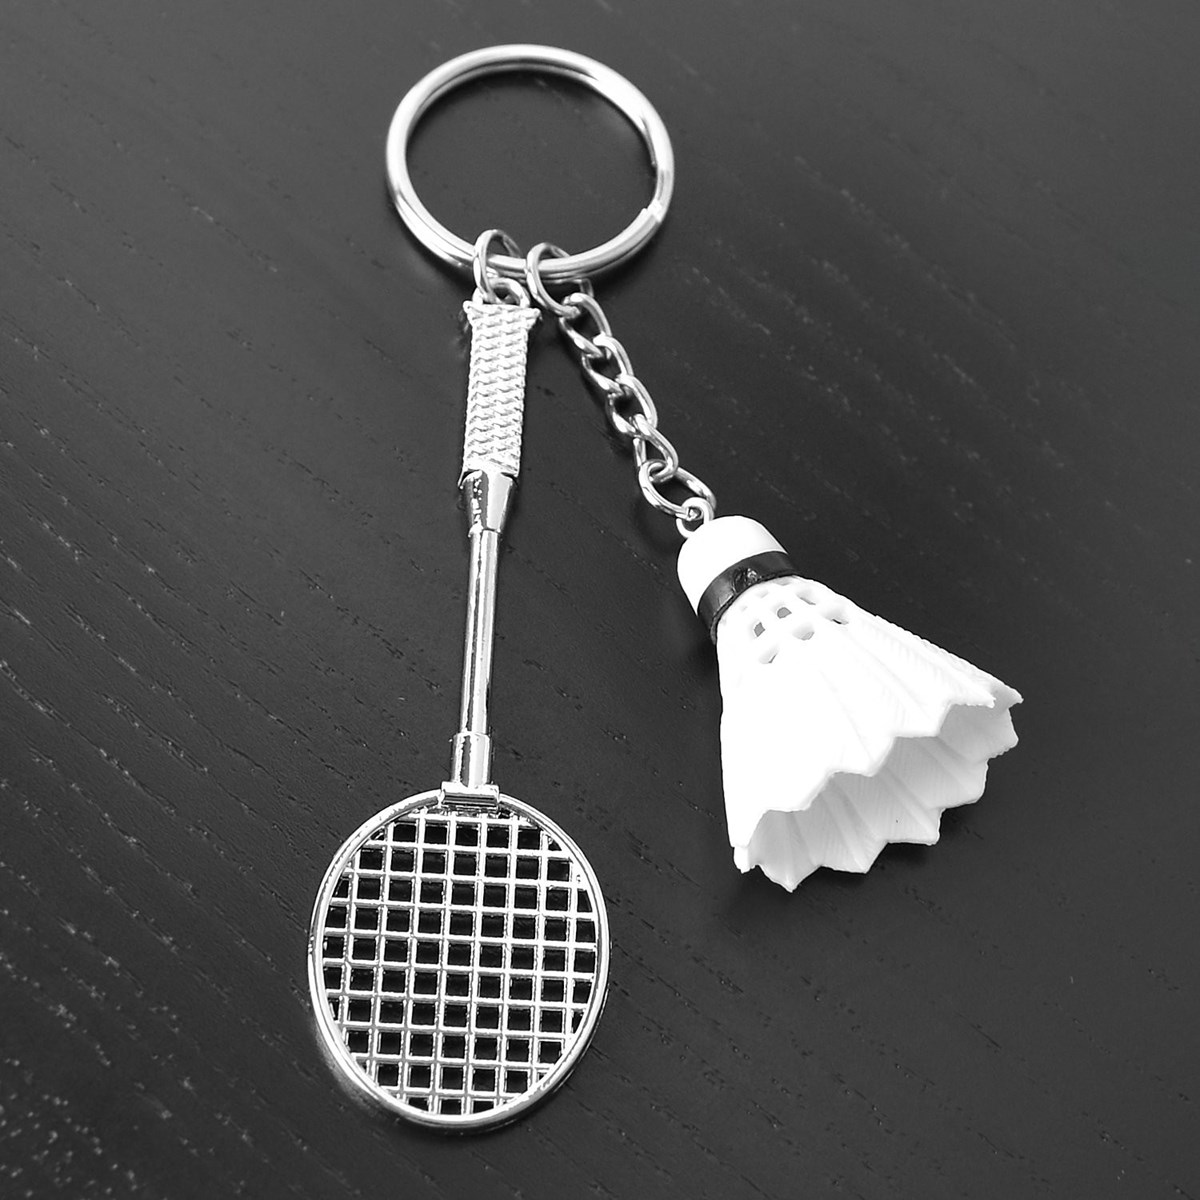 Porte-clés sport badminton raquette et voilant argenté - vue 4